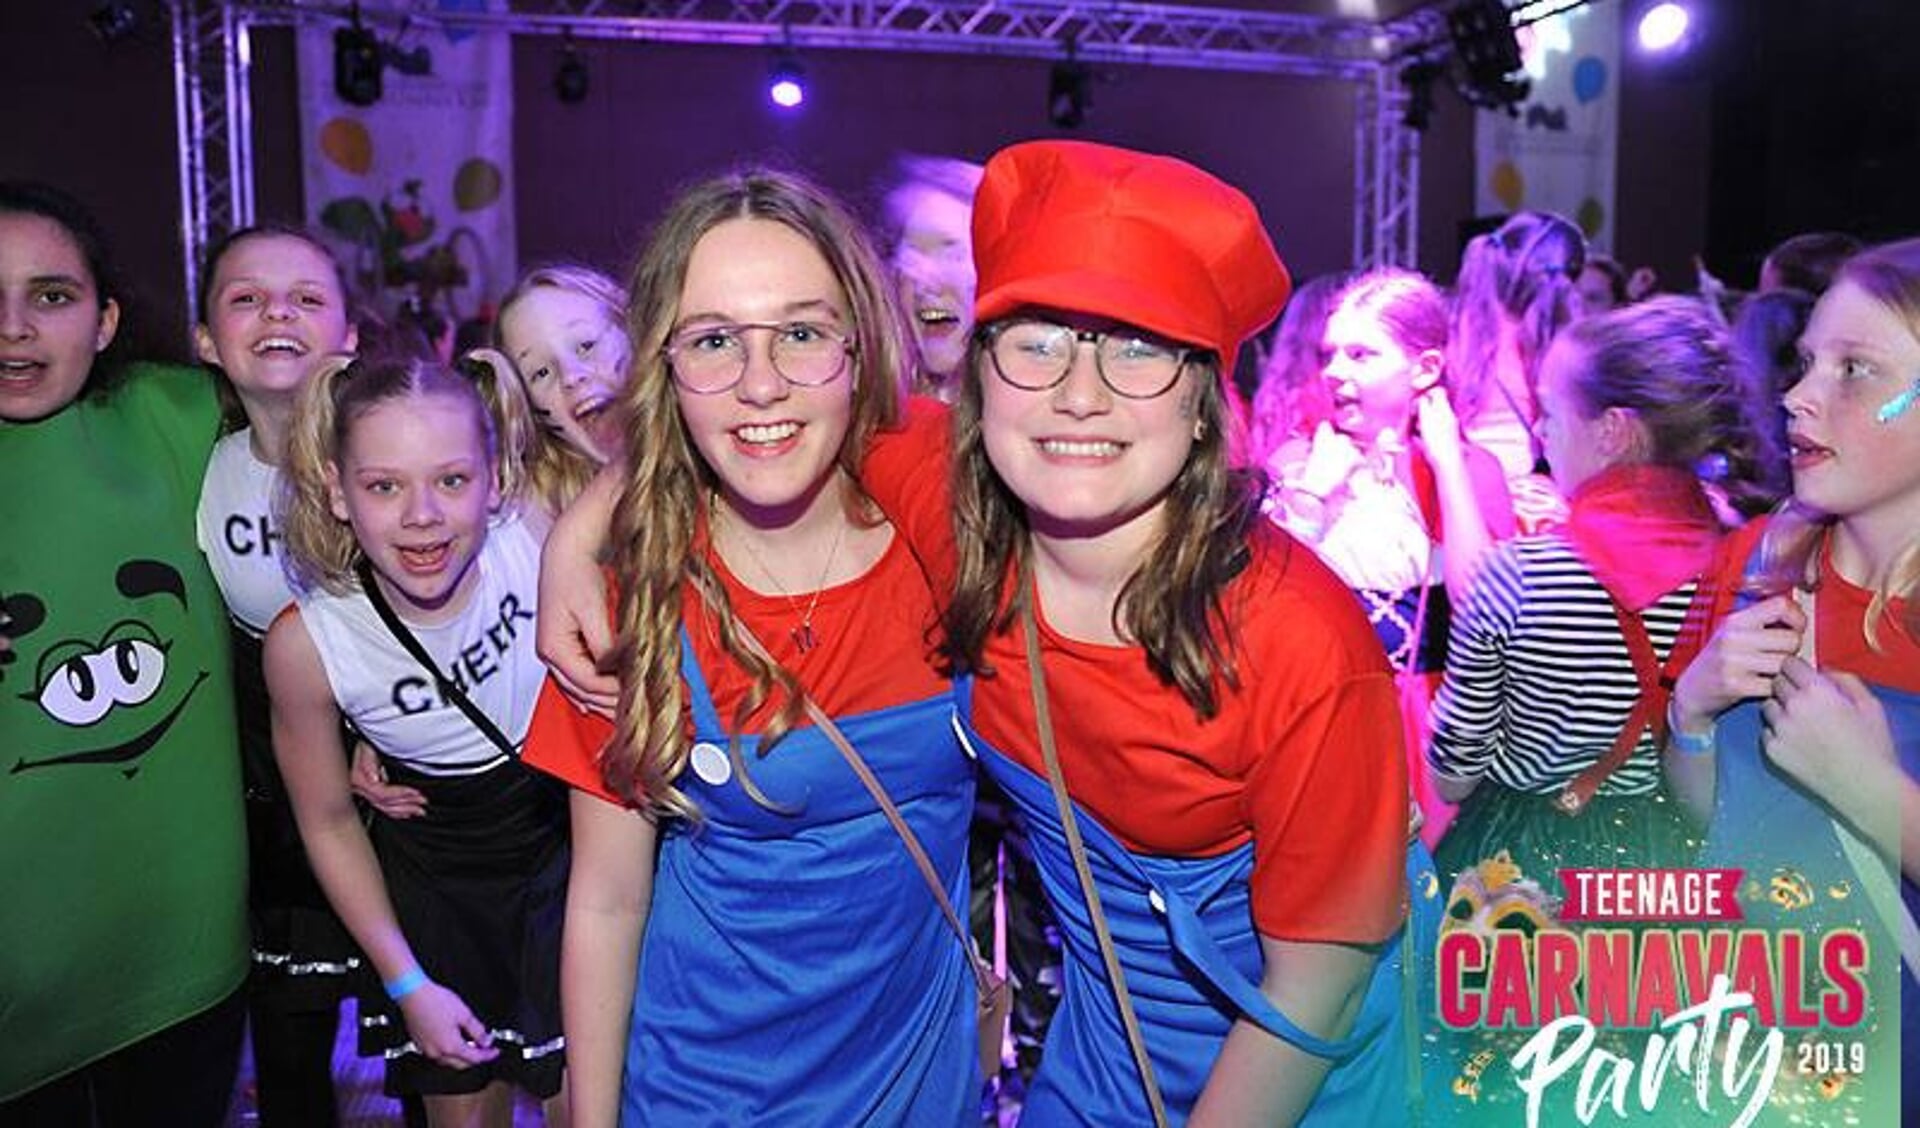 De Teenage Carnavalsparty van De Knunnekes staat altijd garant voor een topfeest!